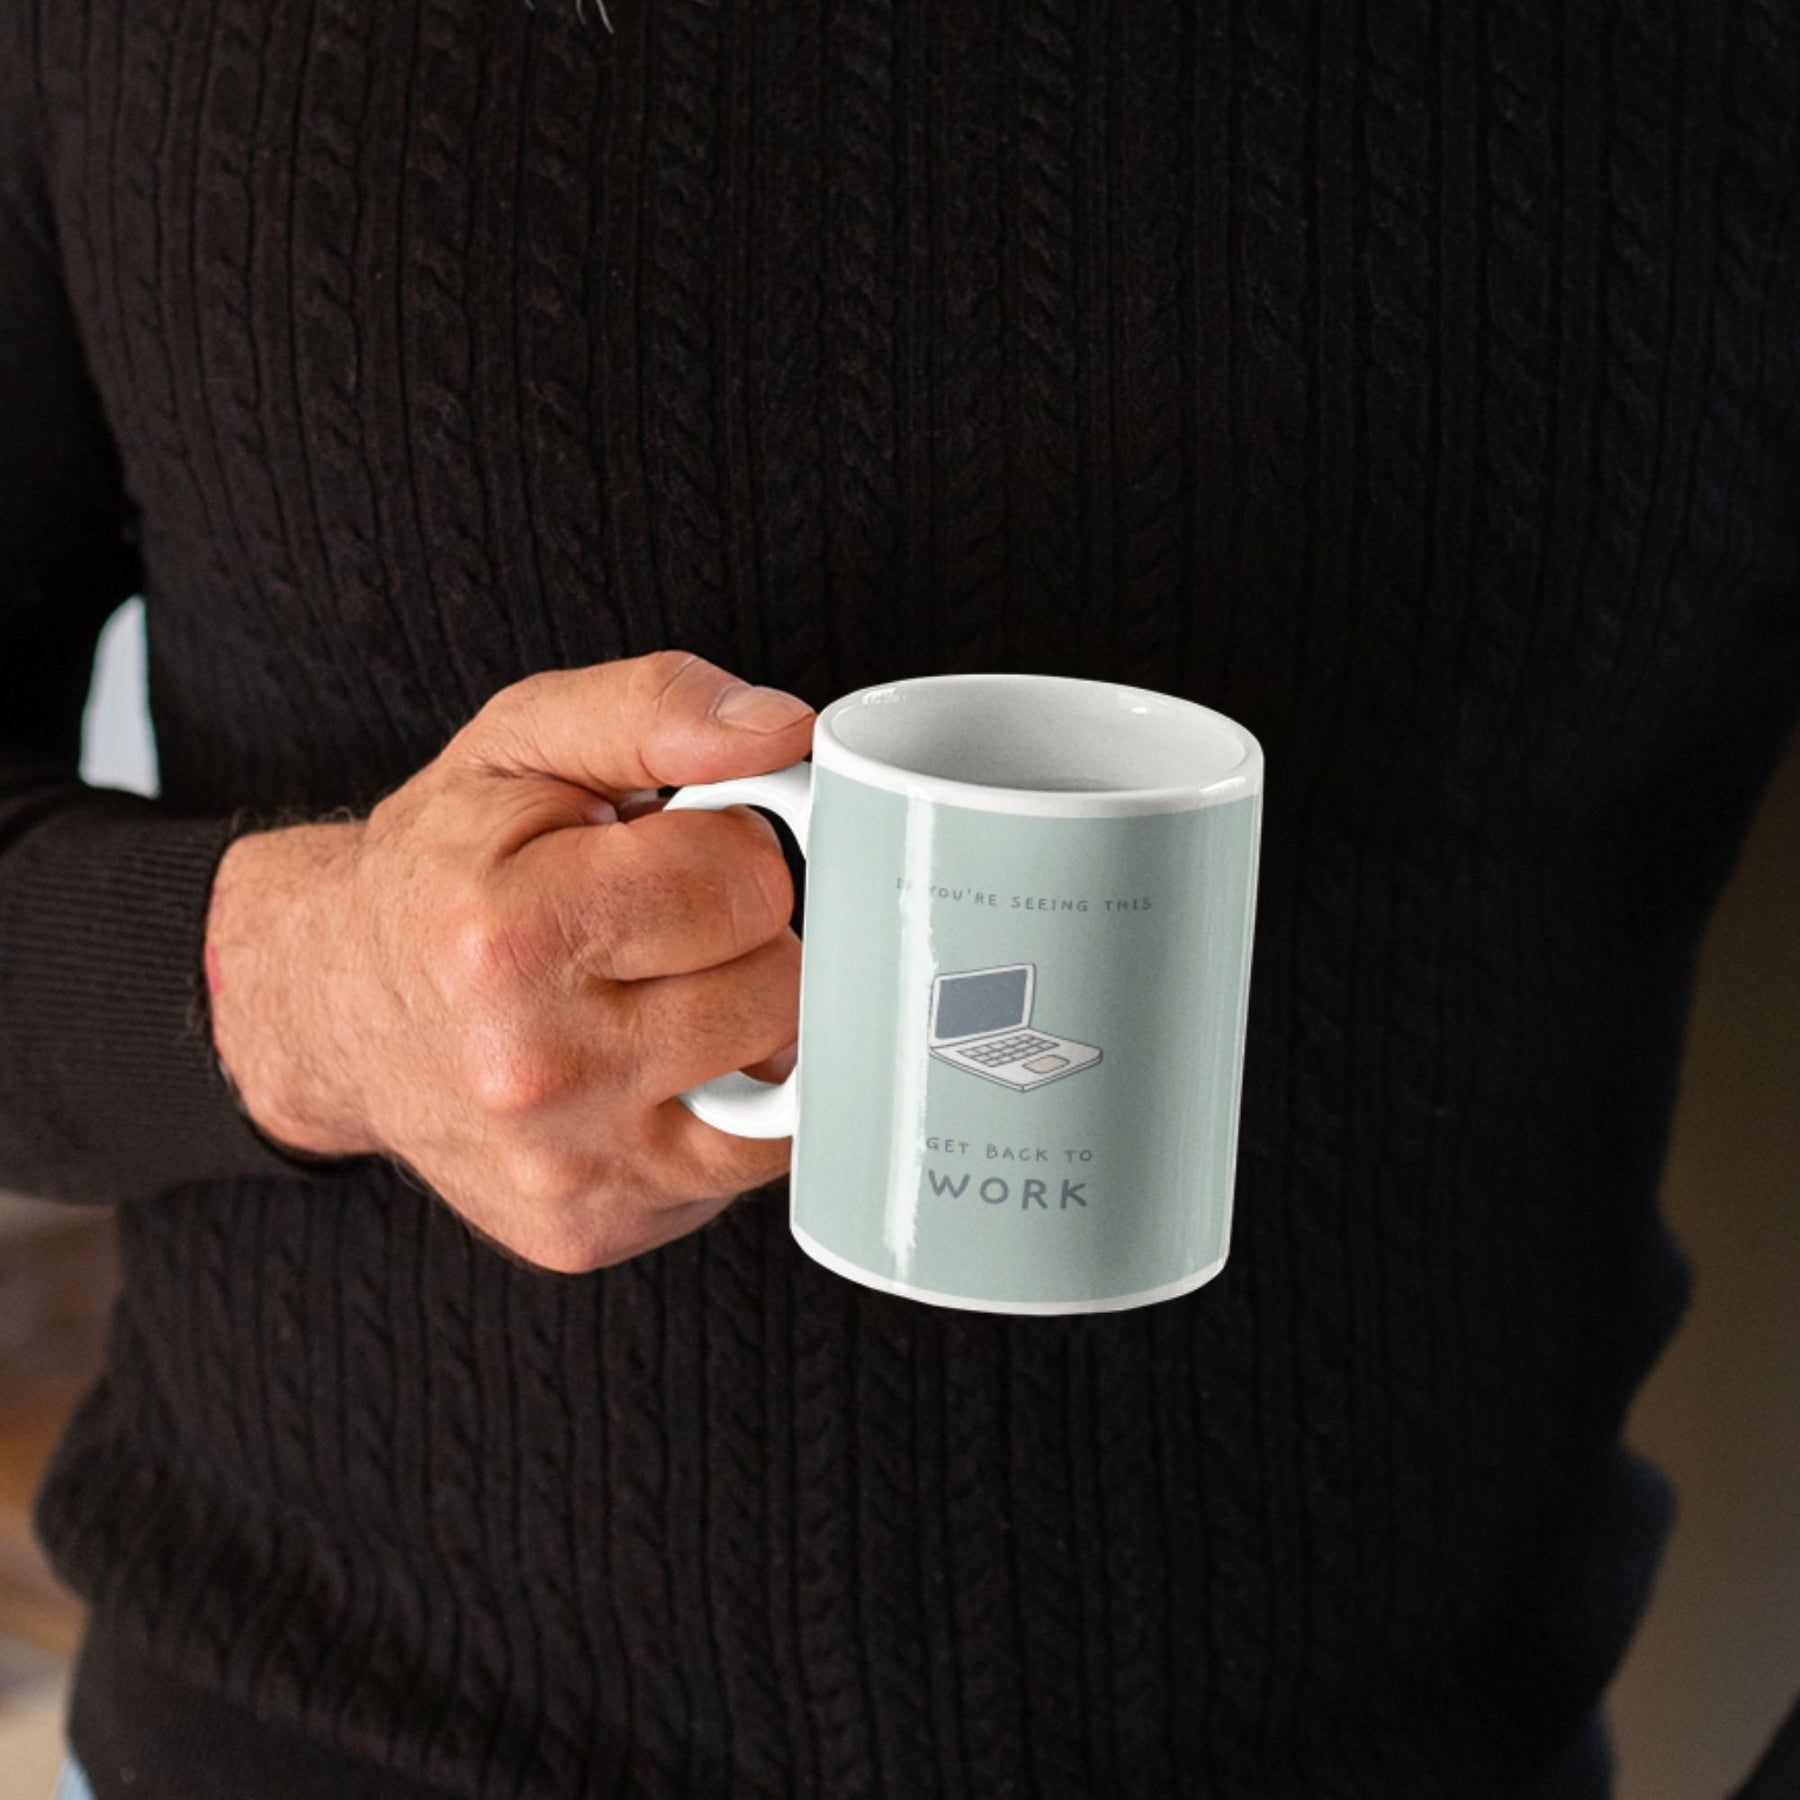 get-back-to-work-white-printed-ceramic-mug-gogirgit-com